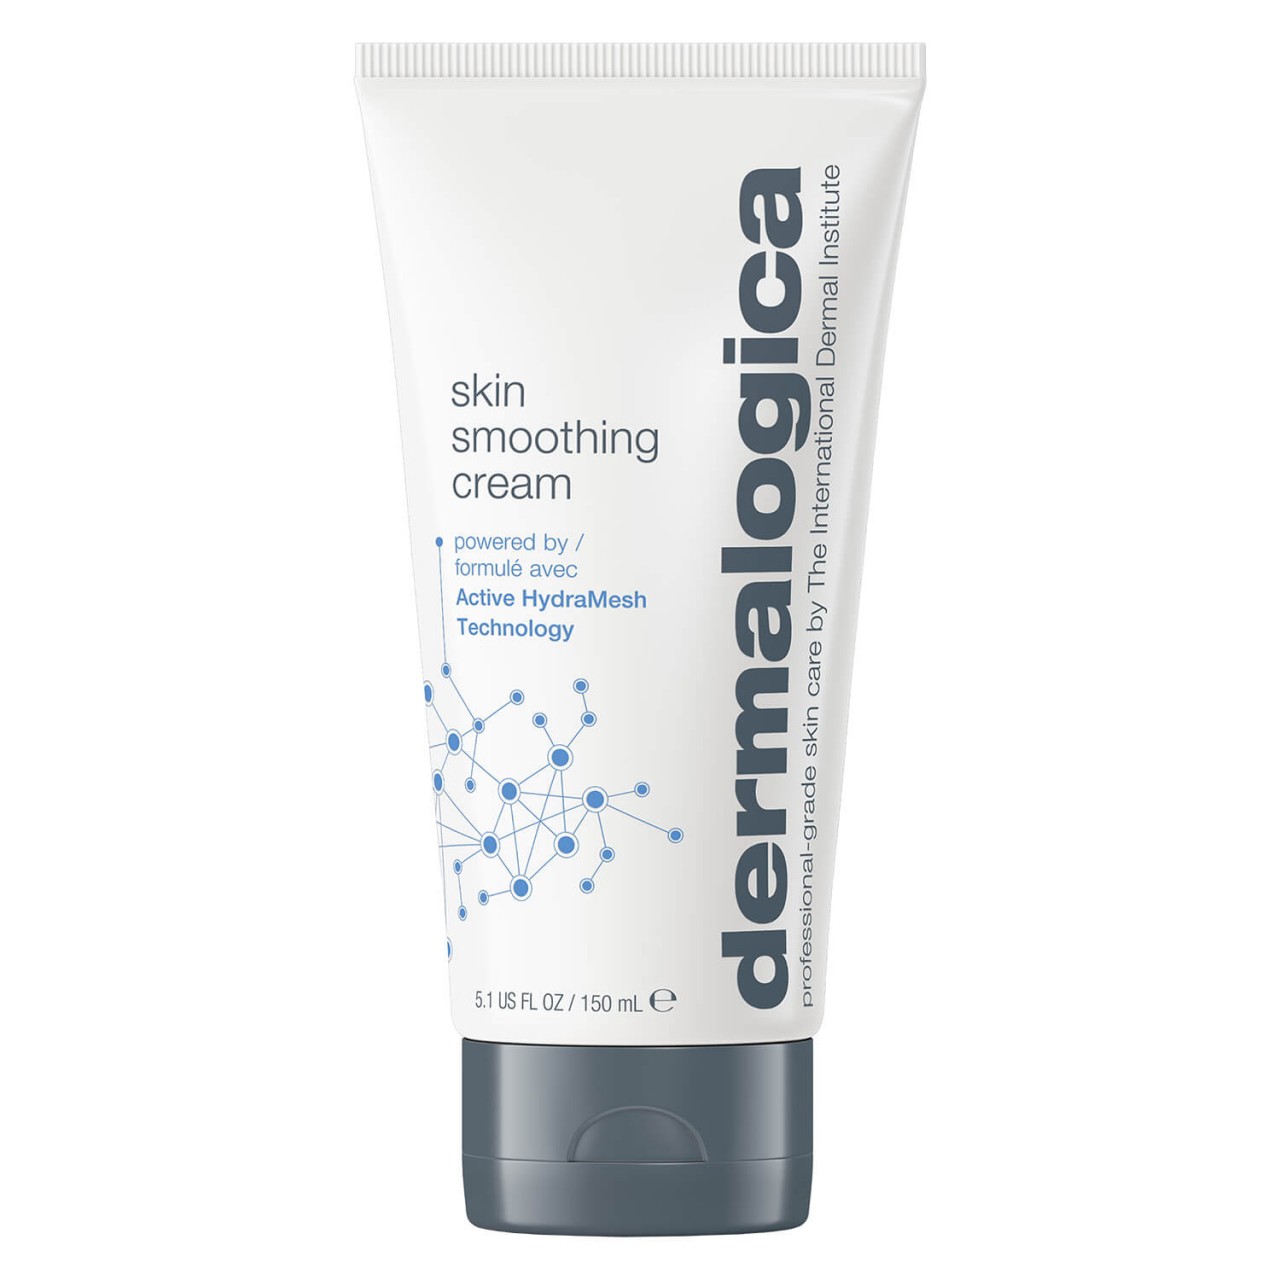 Moisturizers - Skin Smoothing Cream von Dermalogica